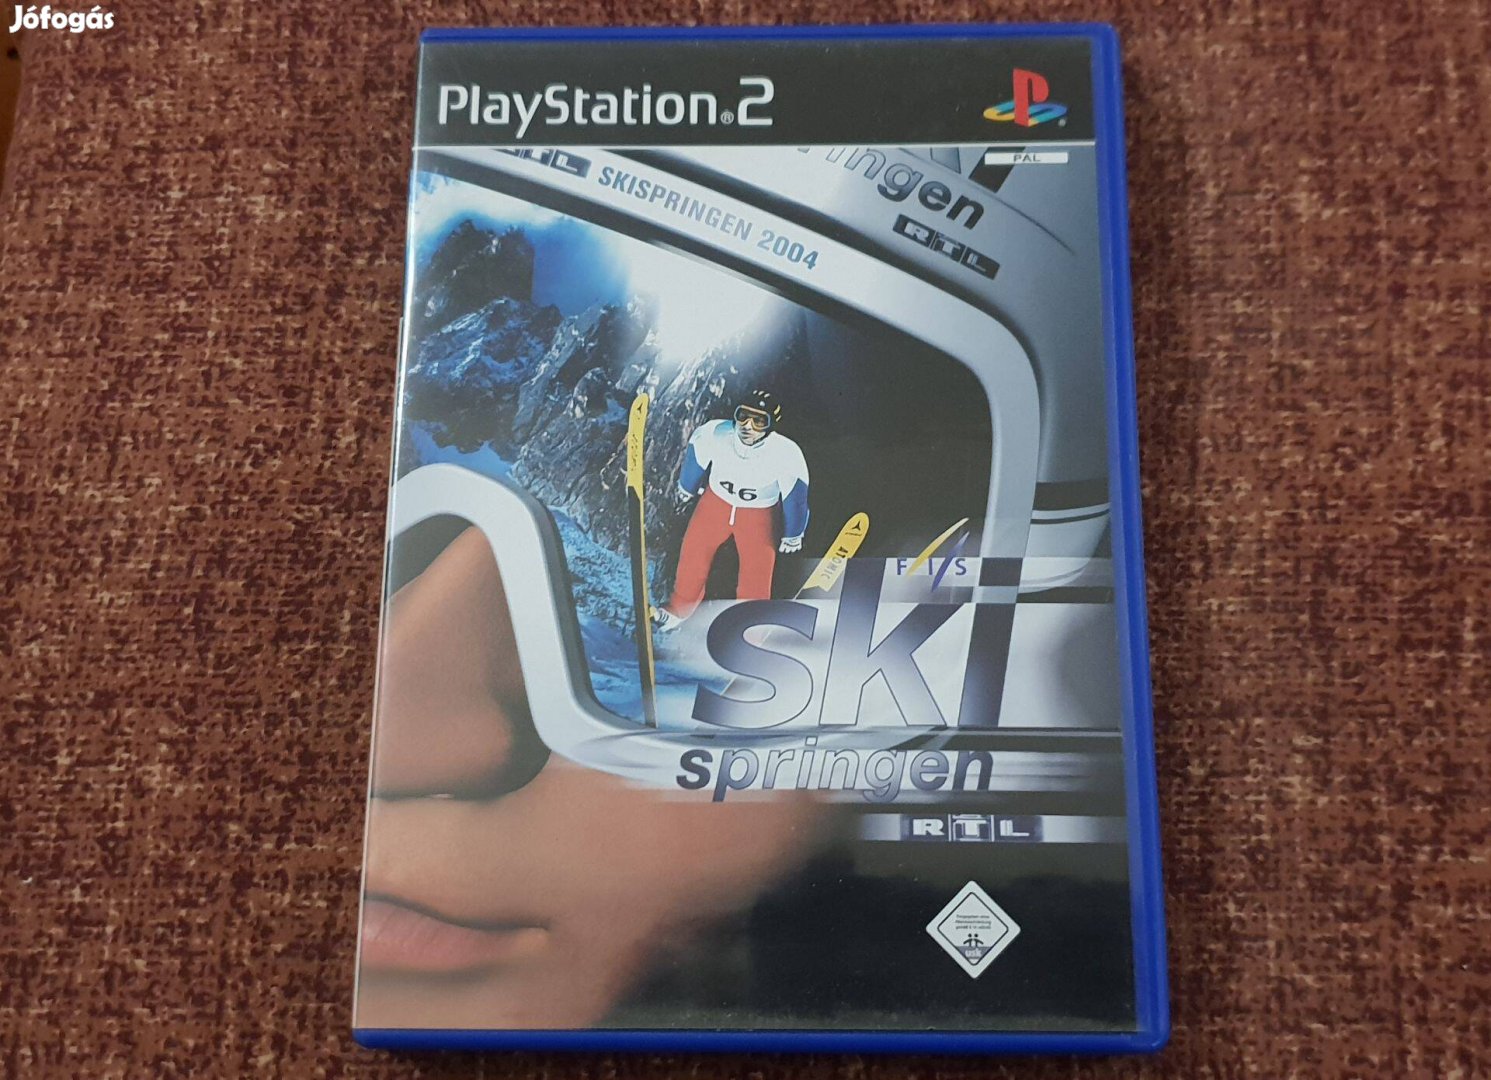 RTL Skispringen Playstation 2 eredeti lemez ( 2500 Ft )